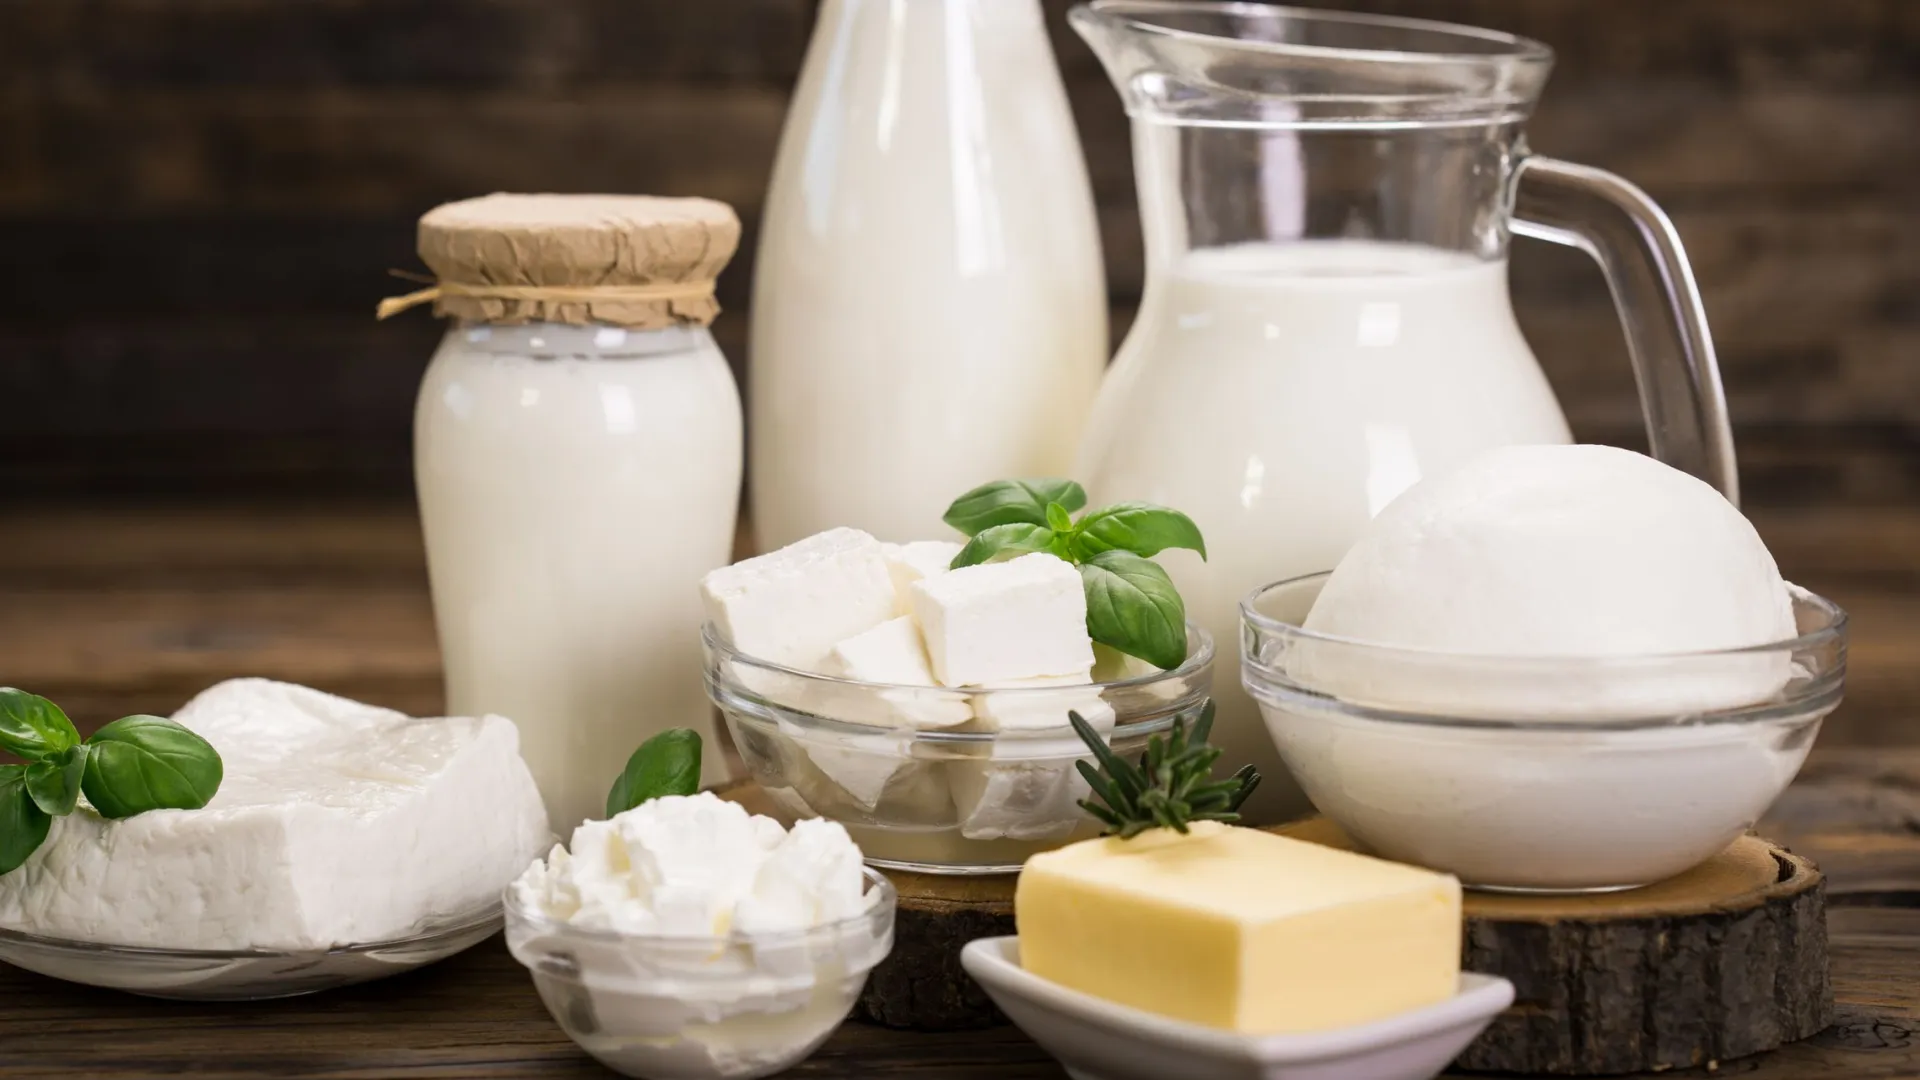 Молоко можно употреблять здоровым людям в любом возрасте. Фото: pilipphoto / Shutterstock / Fotodom